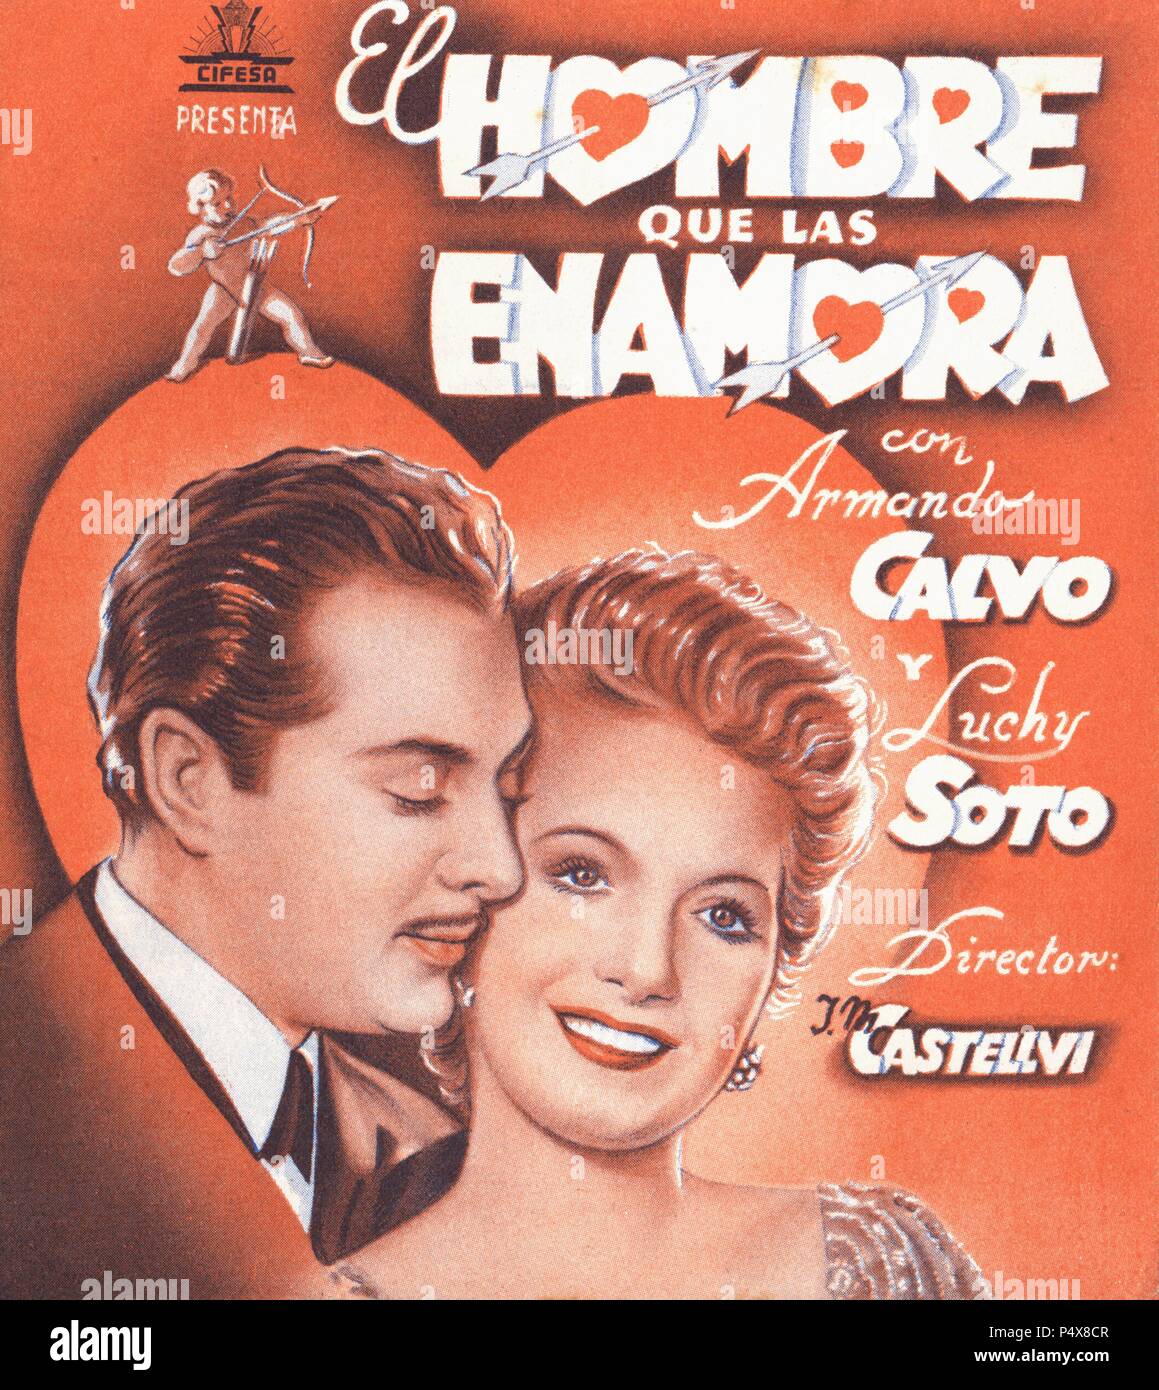 Cartel de la película El Hombre que las enamora, con Armando Calvo y Luchy Soto, dirigida por José María Castellví. España, 1944. Stock Photo